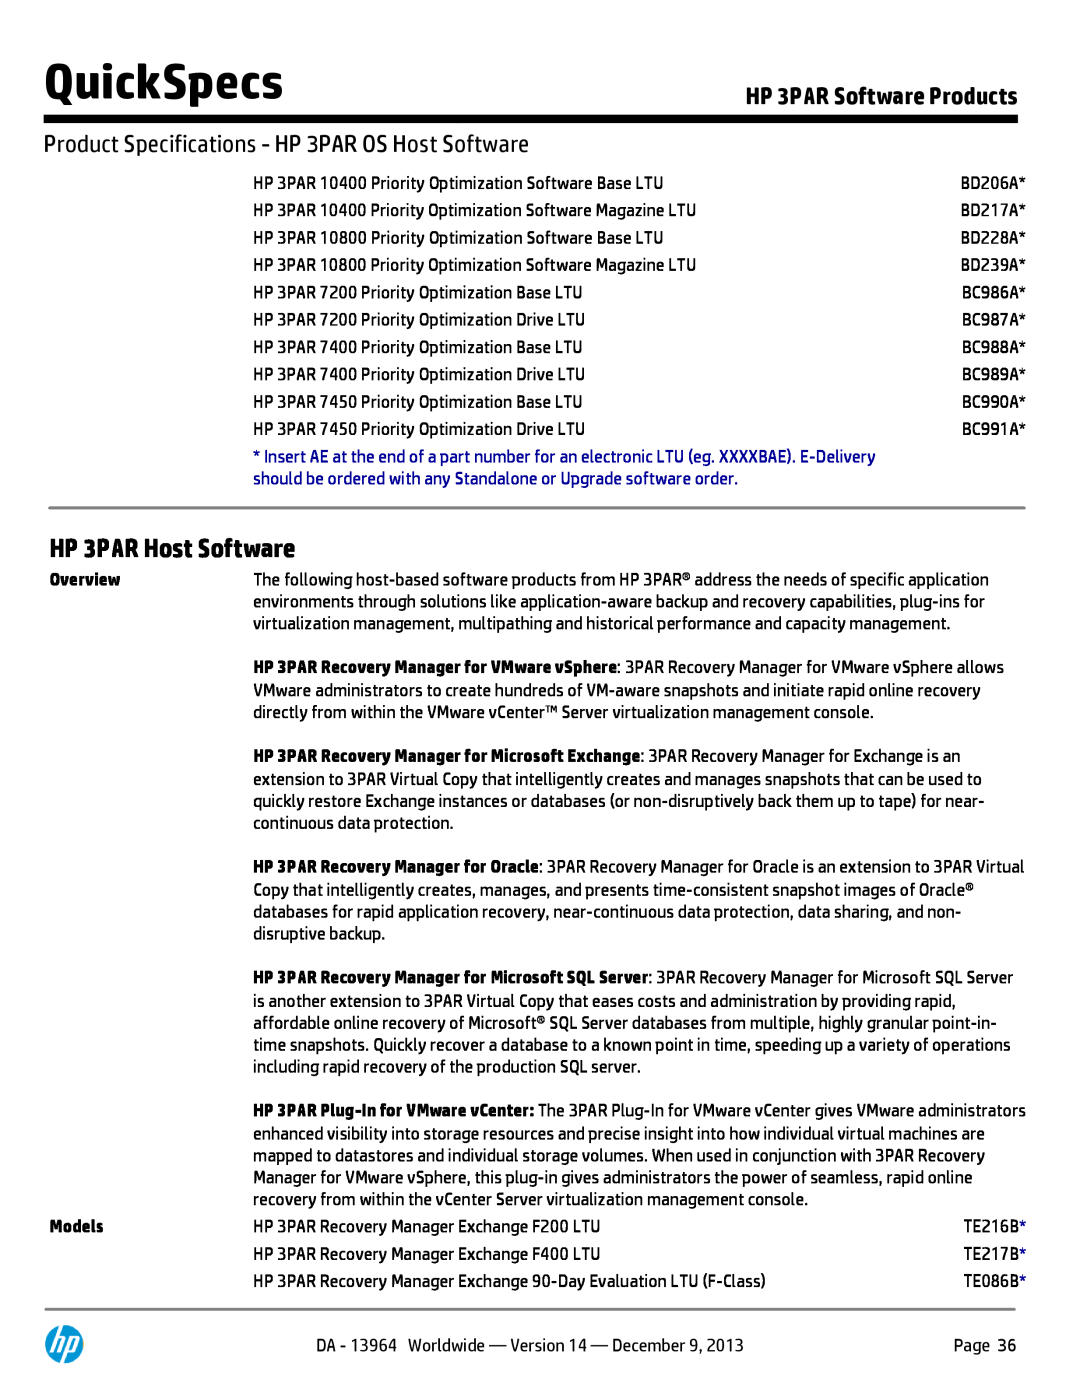 HP 7200 BC767A manual HP 3PAR Host Software, QuickSpecs, HP 3PAR Software Products, Overview, Models 